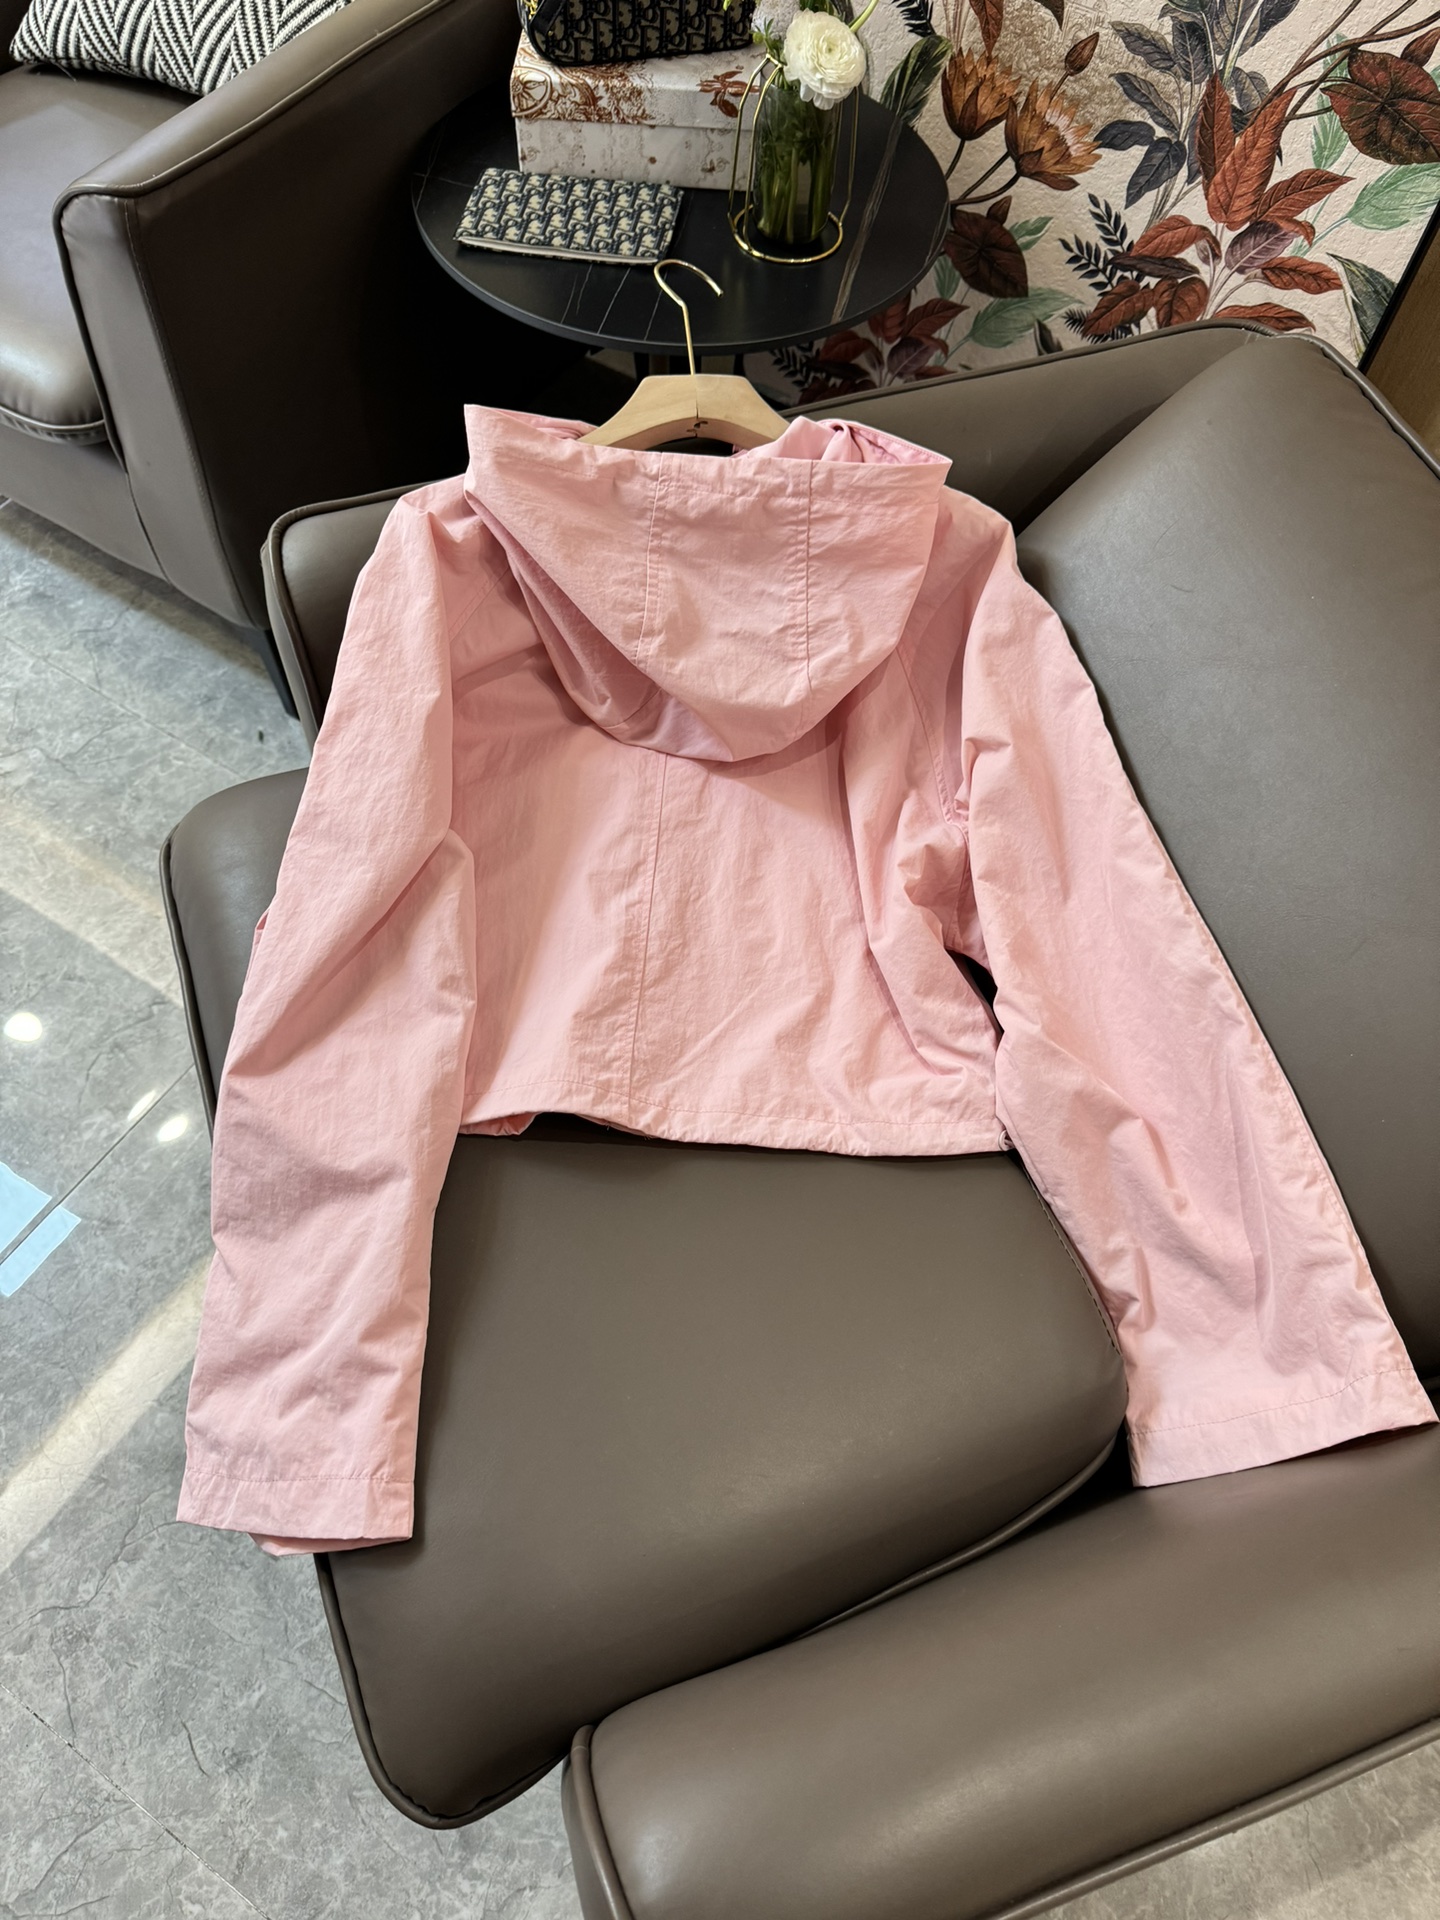 XC24047#新款套装Prada三角标尼龙记忆丝长袖外套短裤套装黑色粉色SML